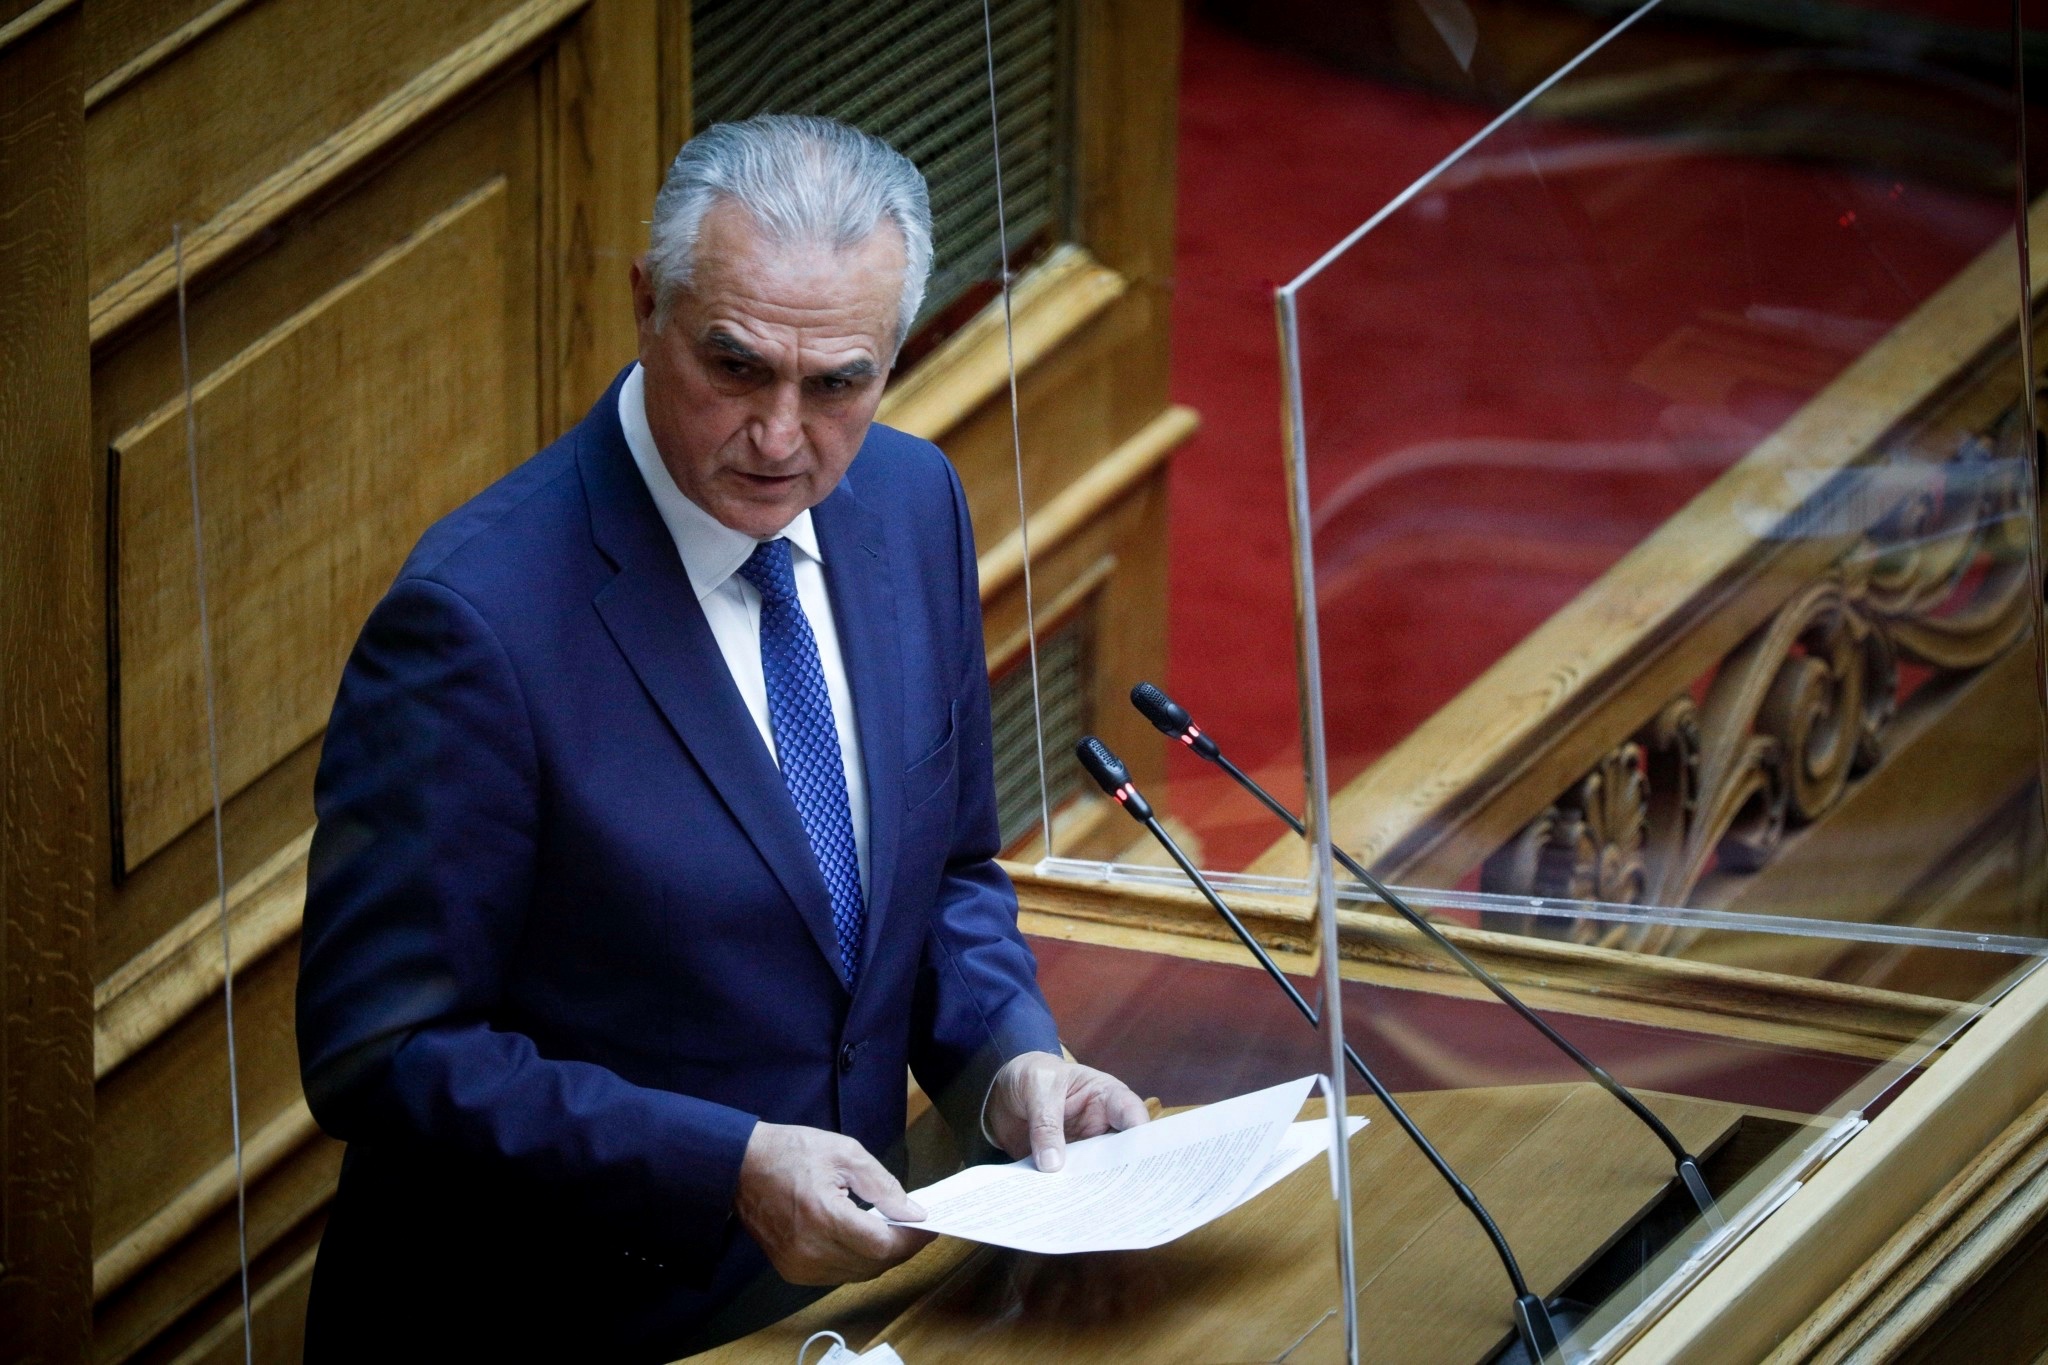 Σάββας Αναστασιάδης: “Η πολιτική να πάει την κοινωνία ένα βήμα προς τα πάνω”